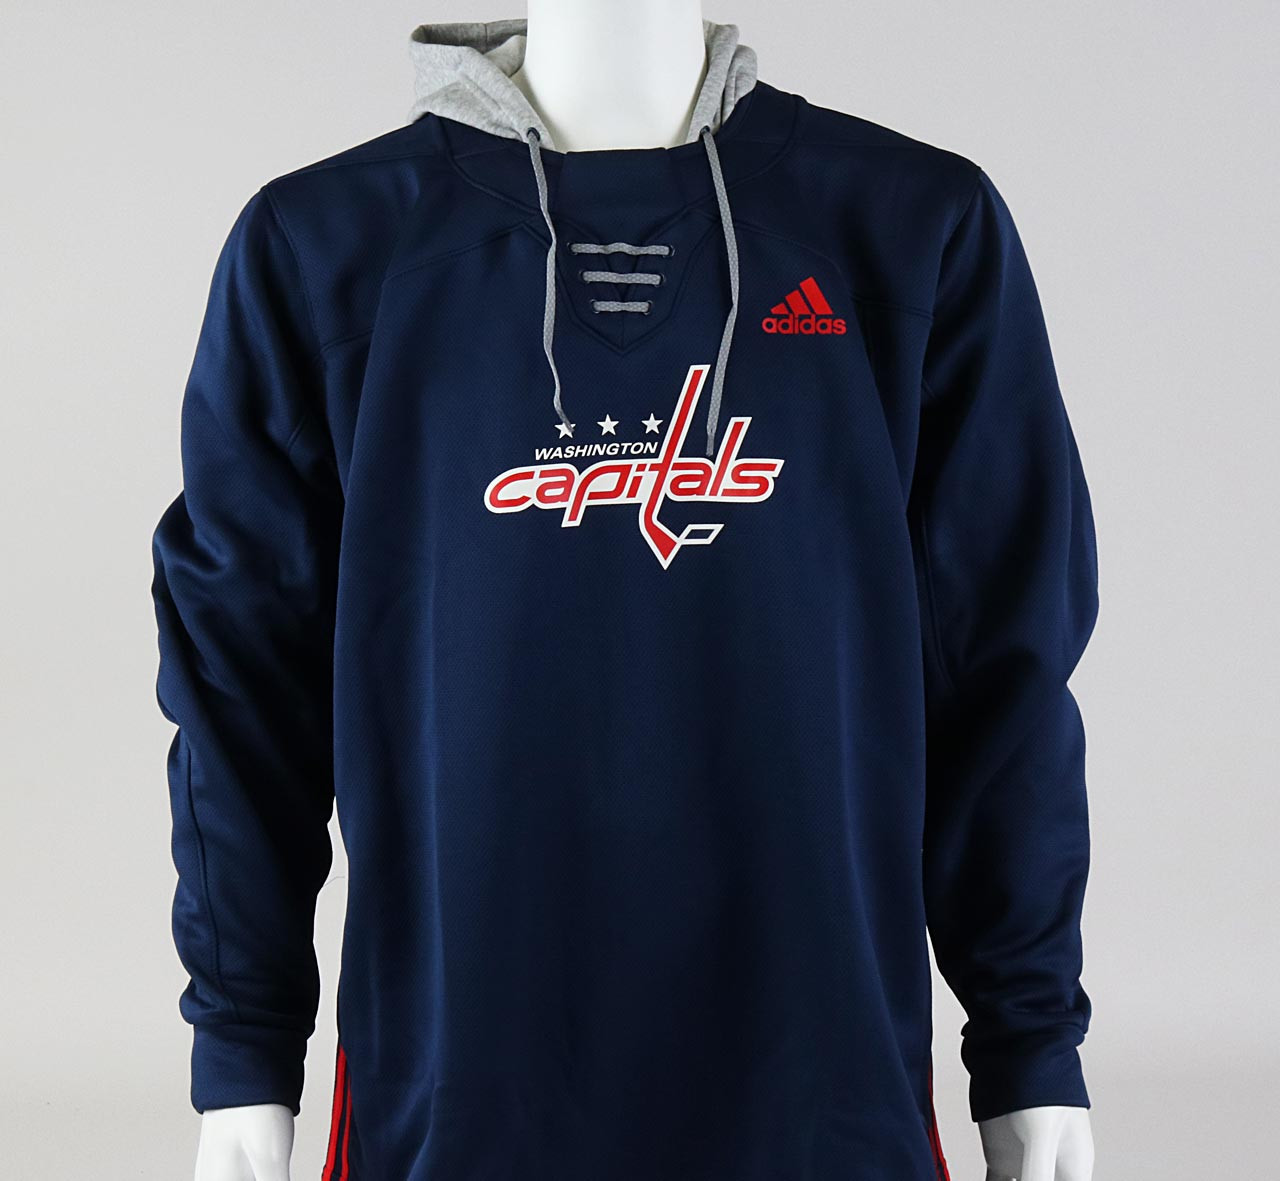 Adidas Washington Capitals NHL Fan Shop